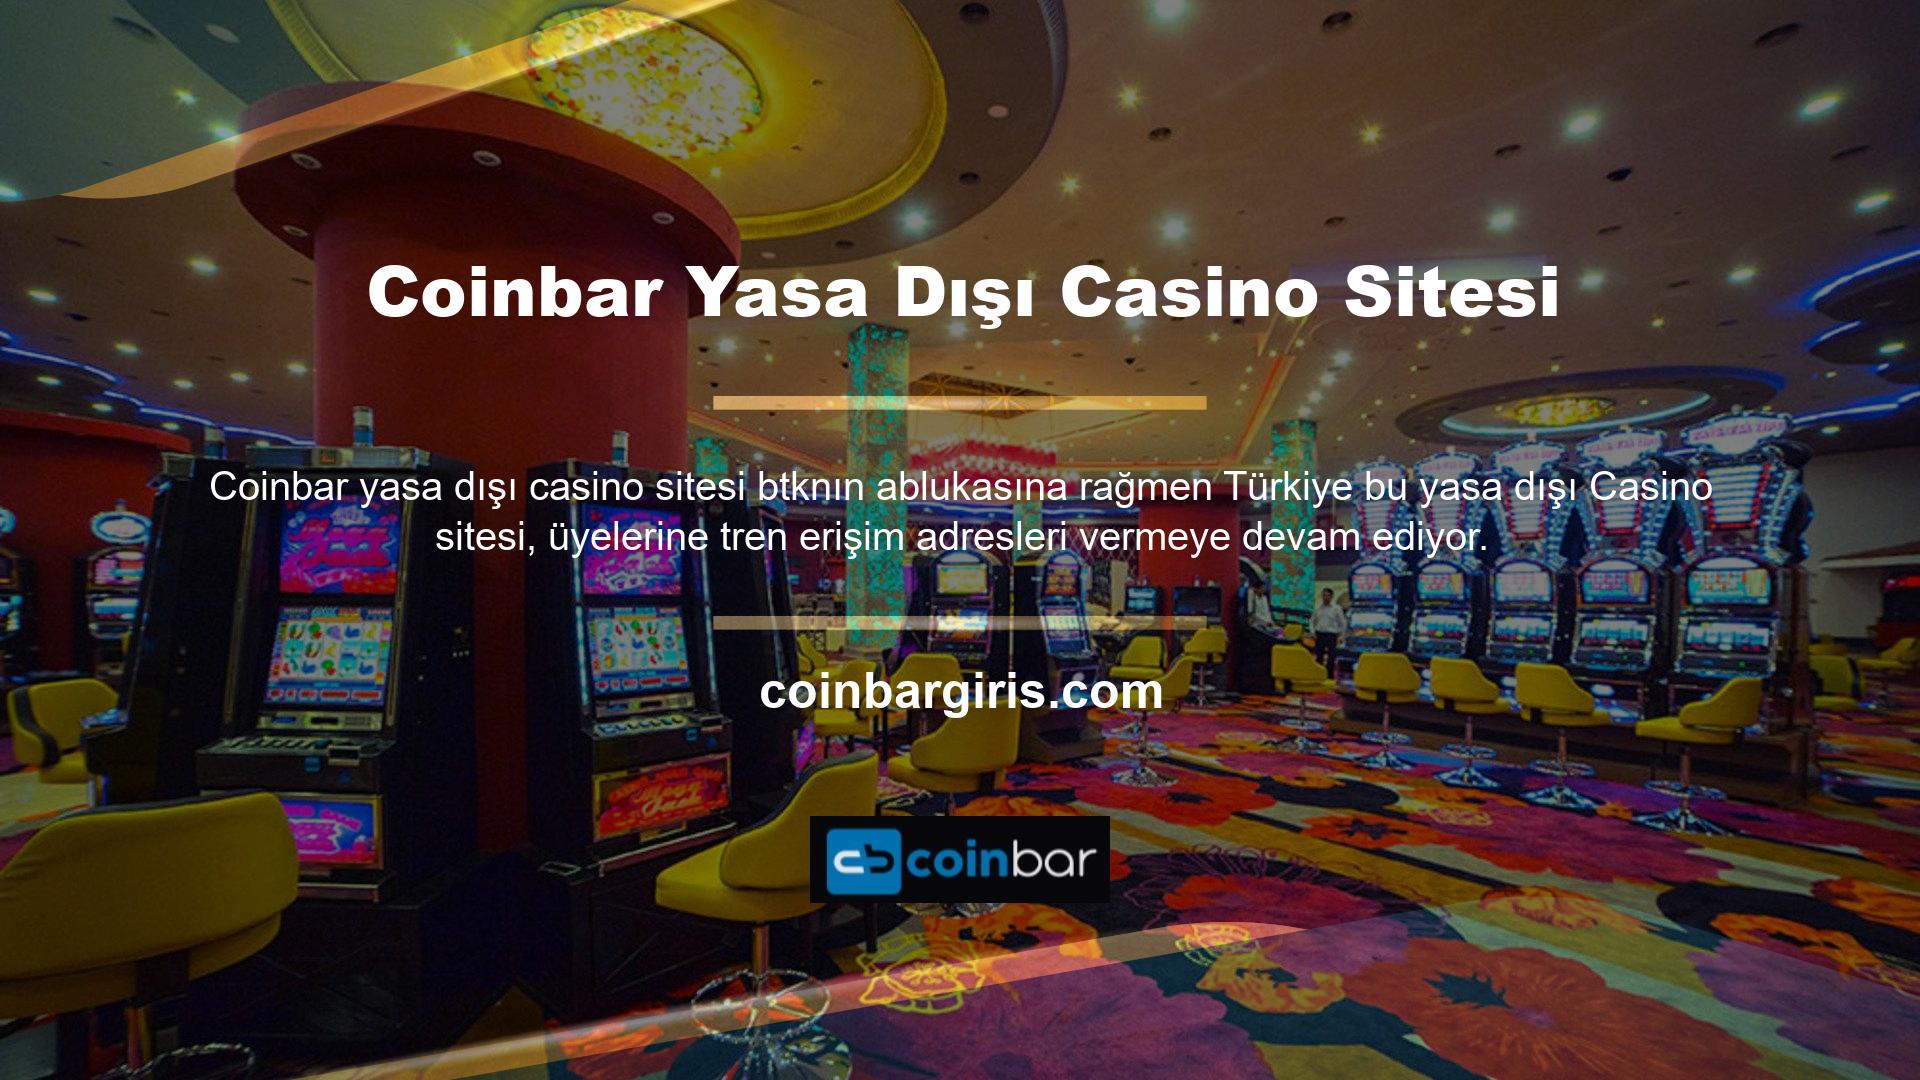 Casino sitelerinin yasa dışı olmasına rağmen Coinbar güvenilirliği kanıtlanmış ve bu da onların Türkiye üyeliklerine devam etmelerine yol açmıştır